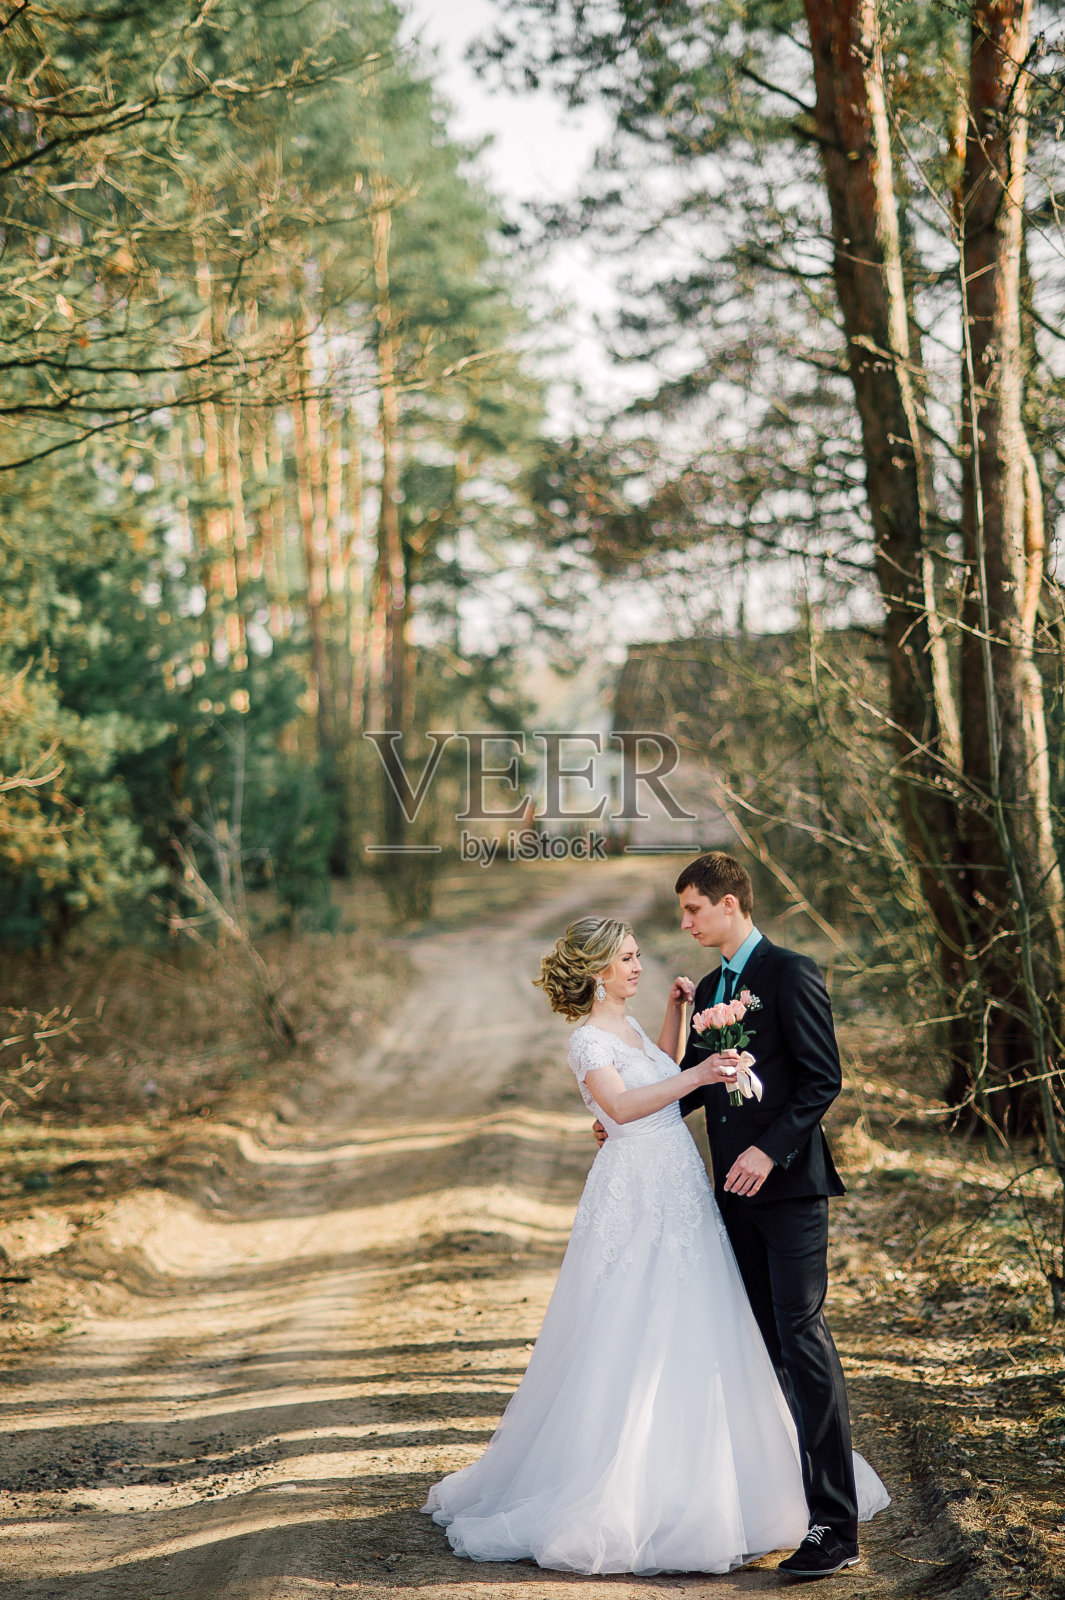 新娘和新郎在公园接吻。一对新婚夫妇新娘和新郎在一个婚礼在自然绿色的森林正在亲吻照片肖像。婚礼的夫妇照片摄影图片